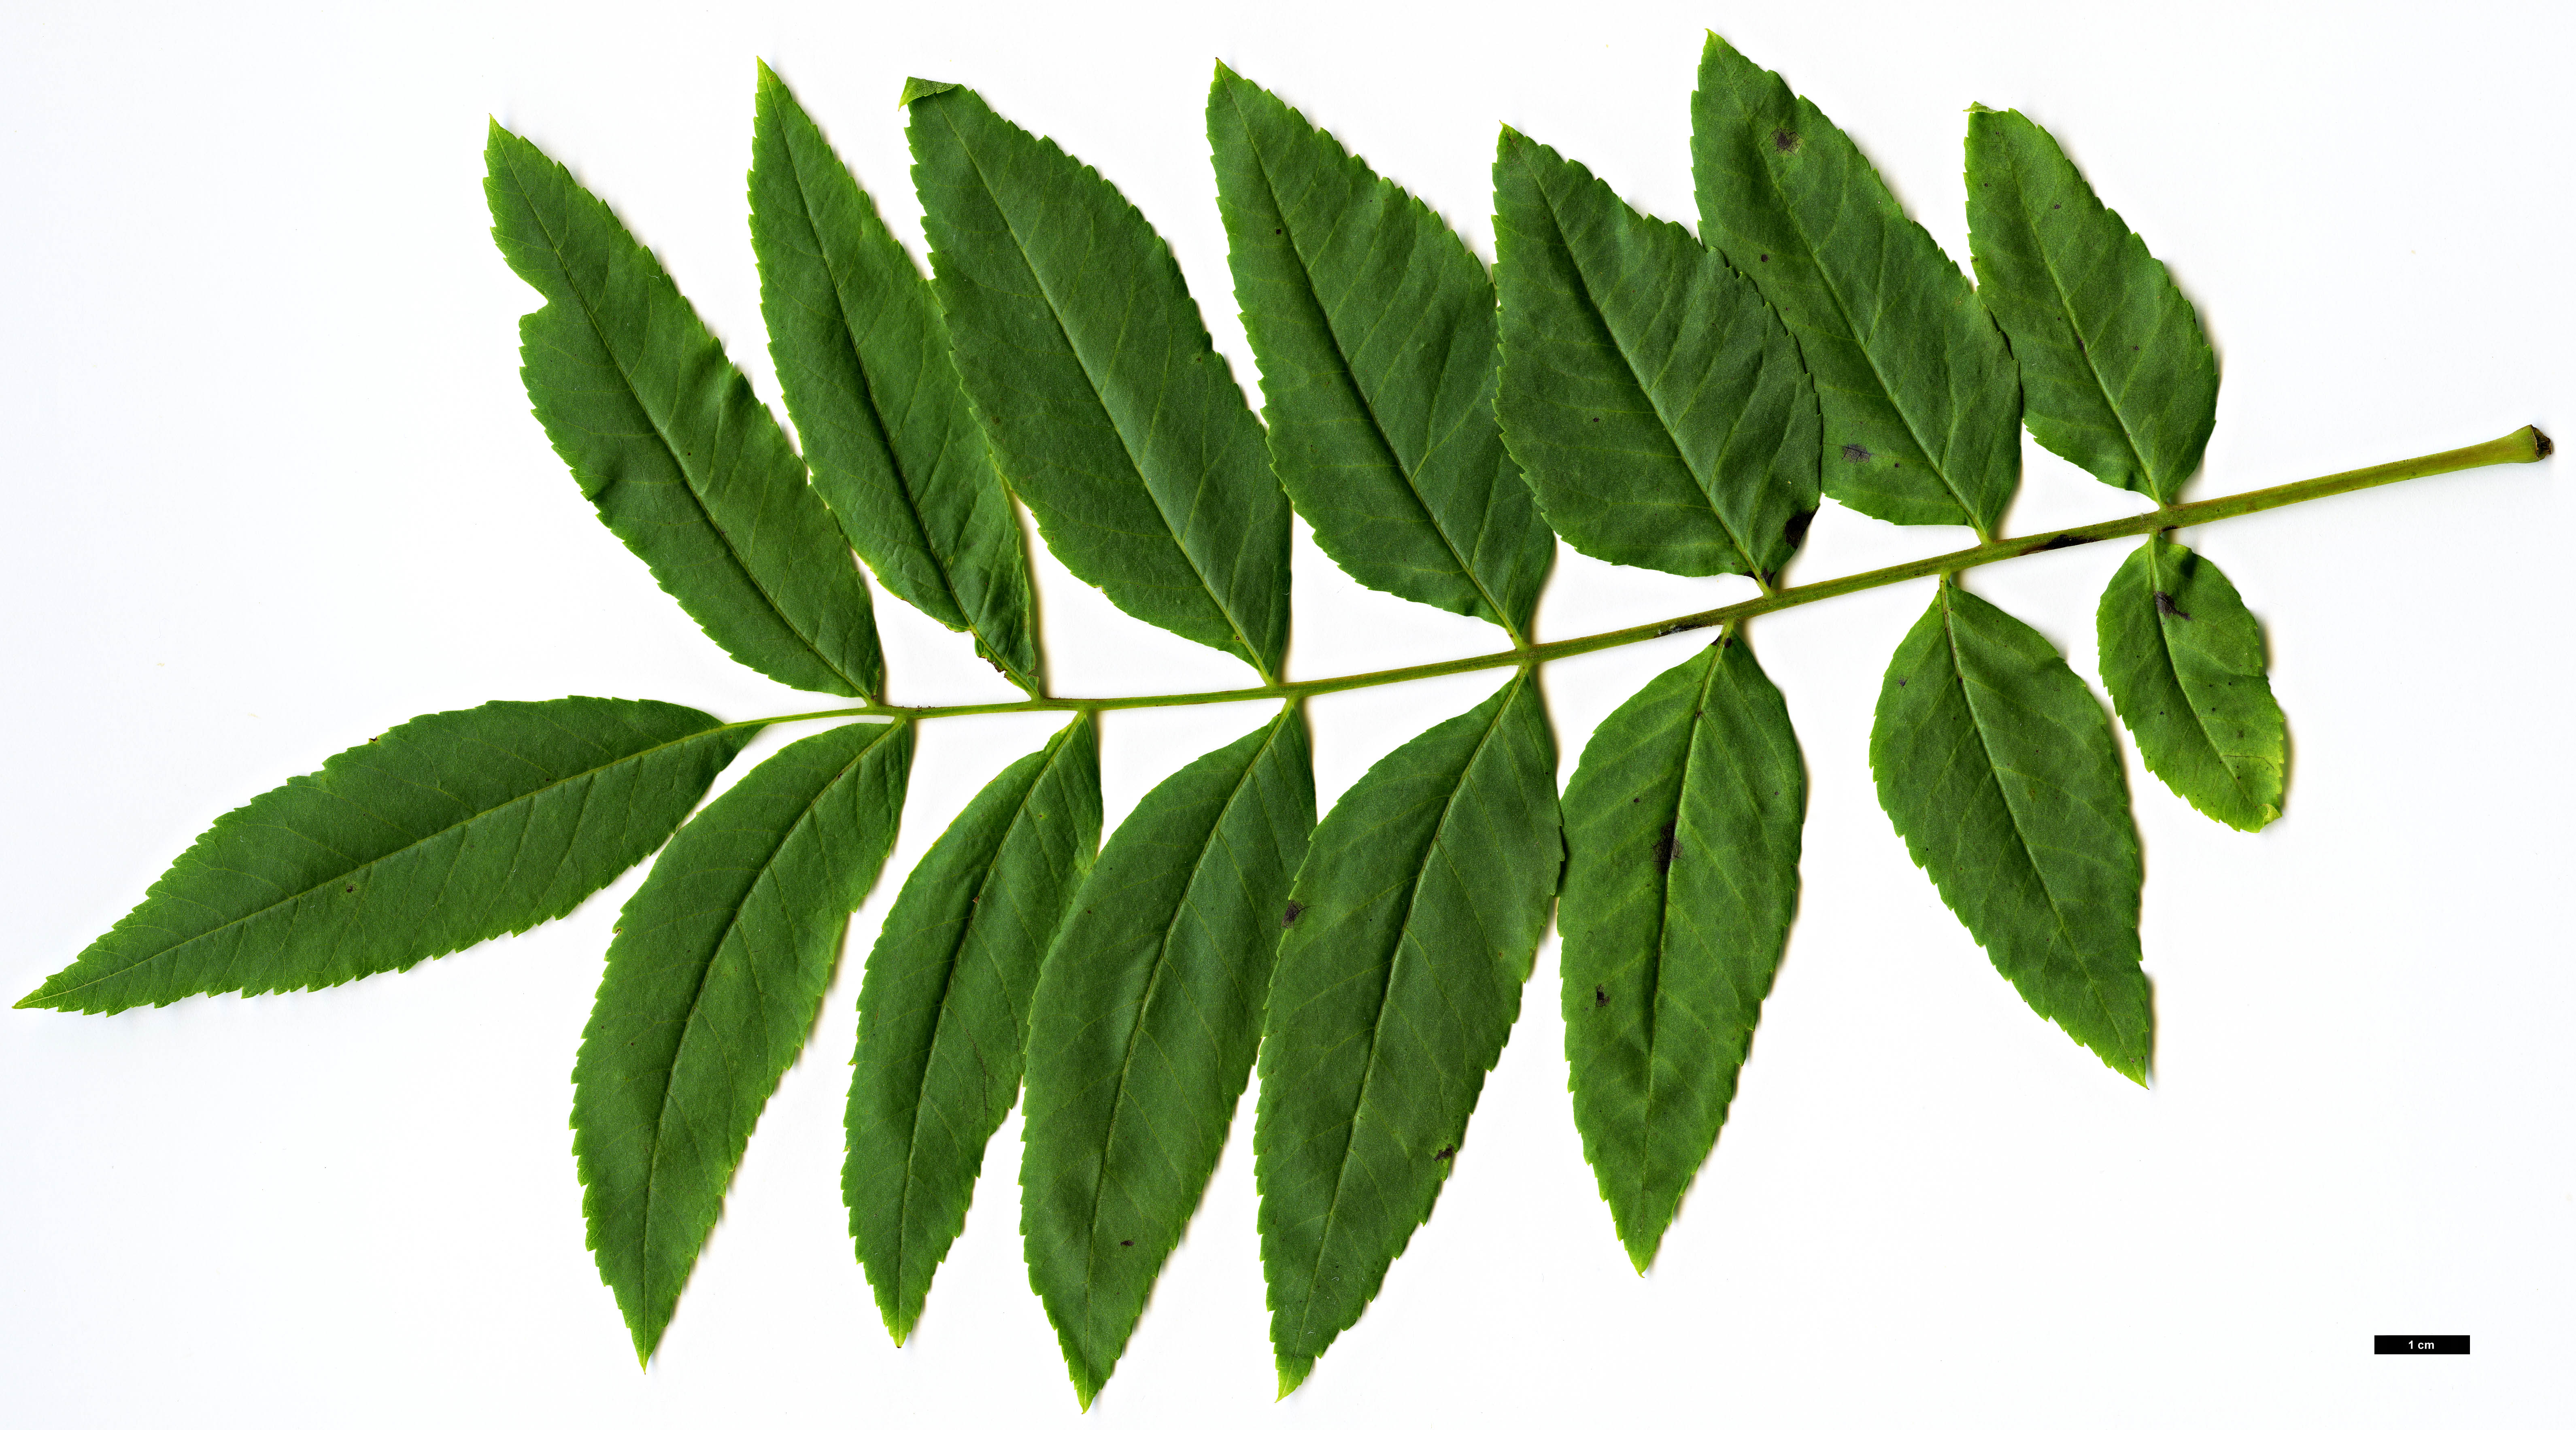 High resolution image: Family: Juglandaceae - Genus: Juglans - Taxon: hindsii